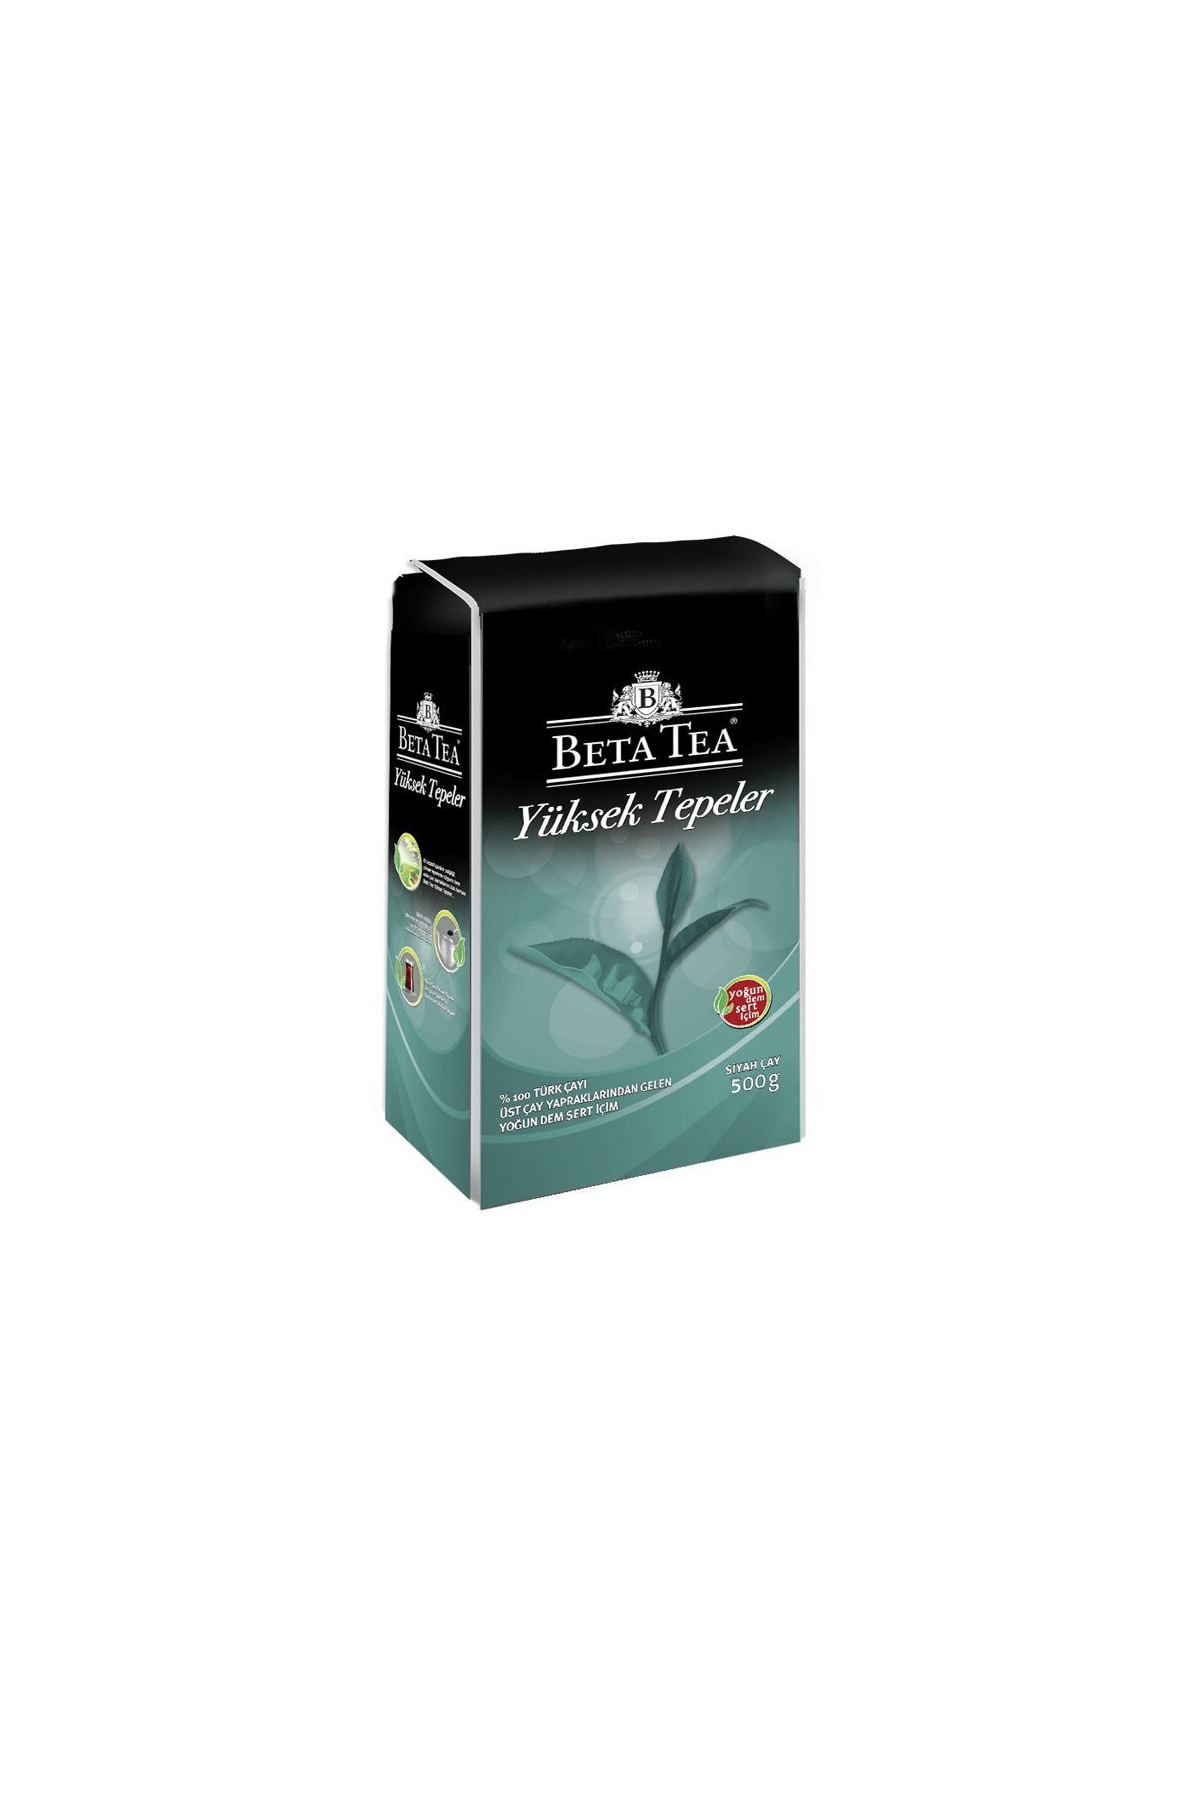 Beta Tea Yüksek Tepeler Türk Çayı 500 Gr